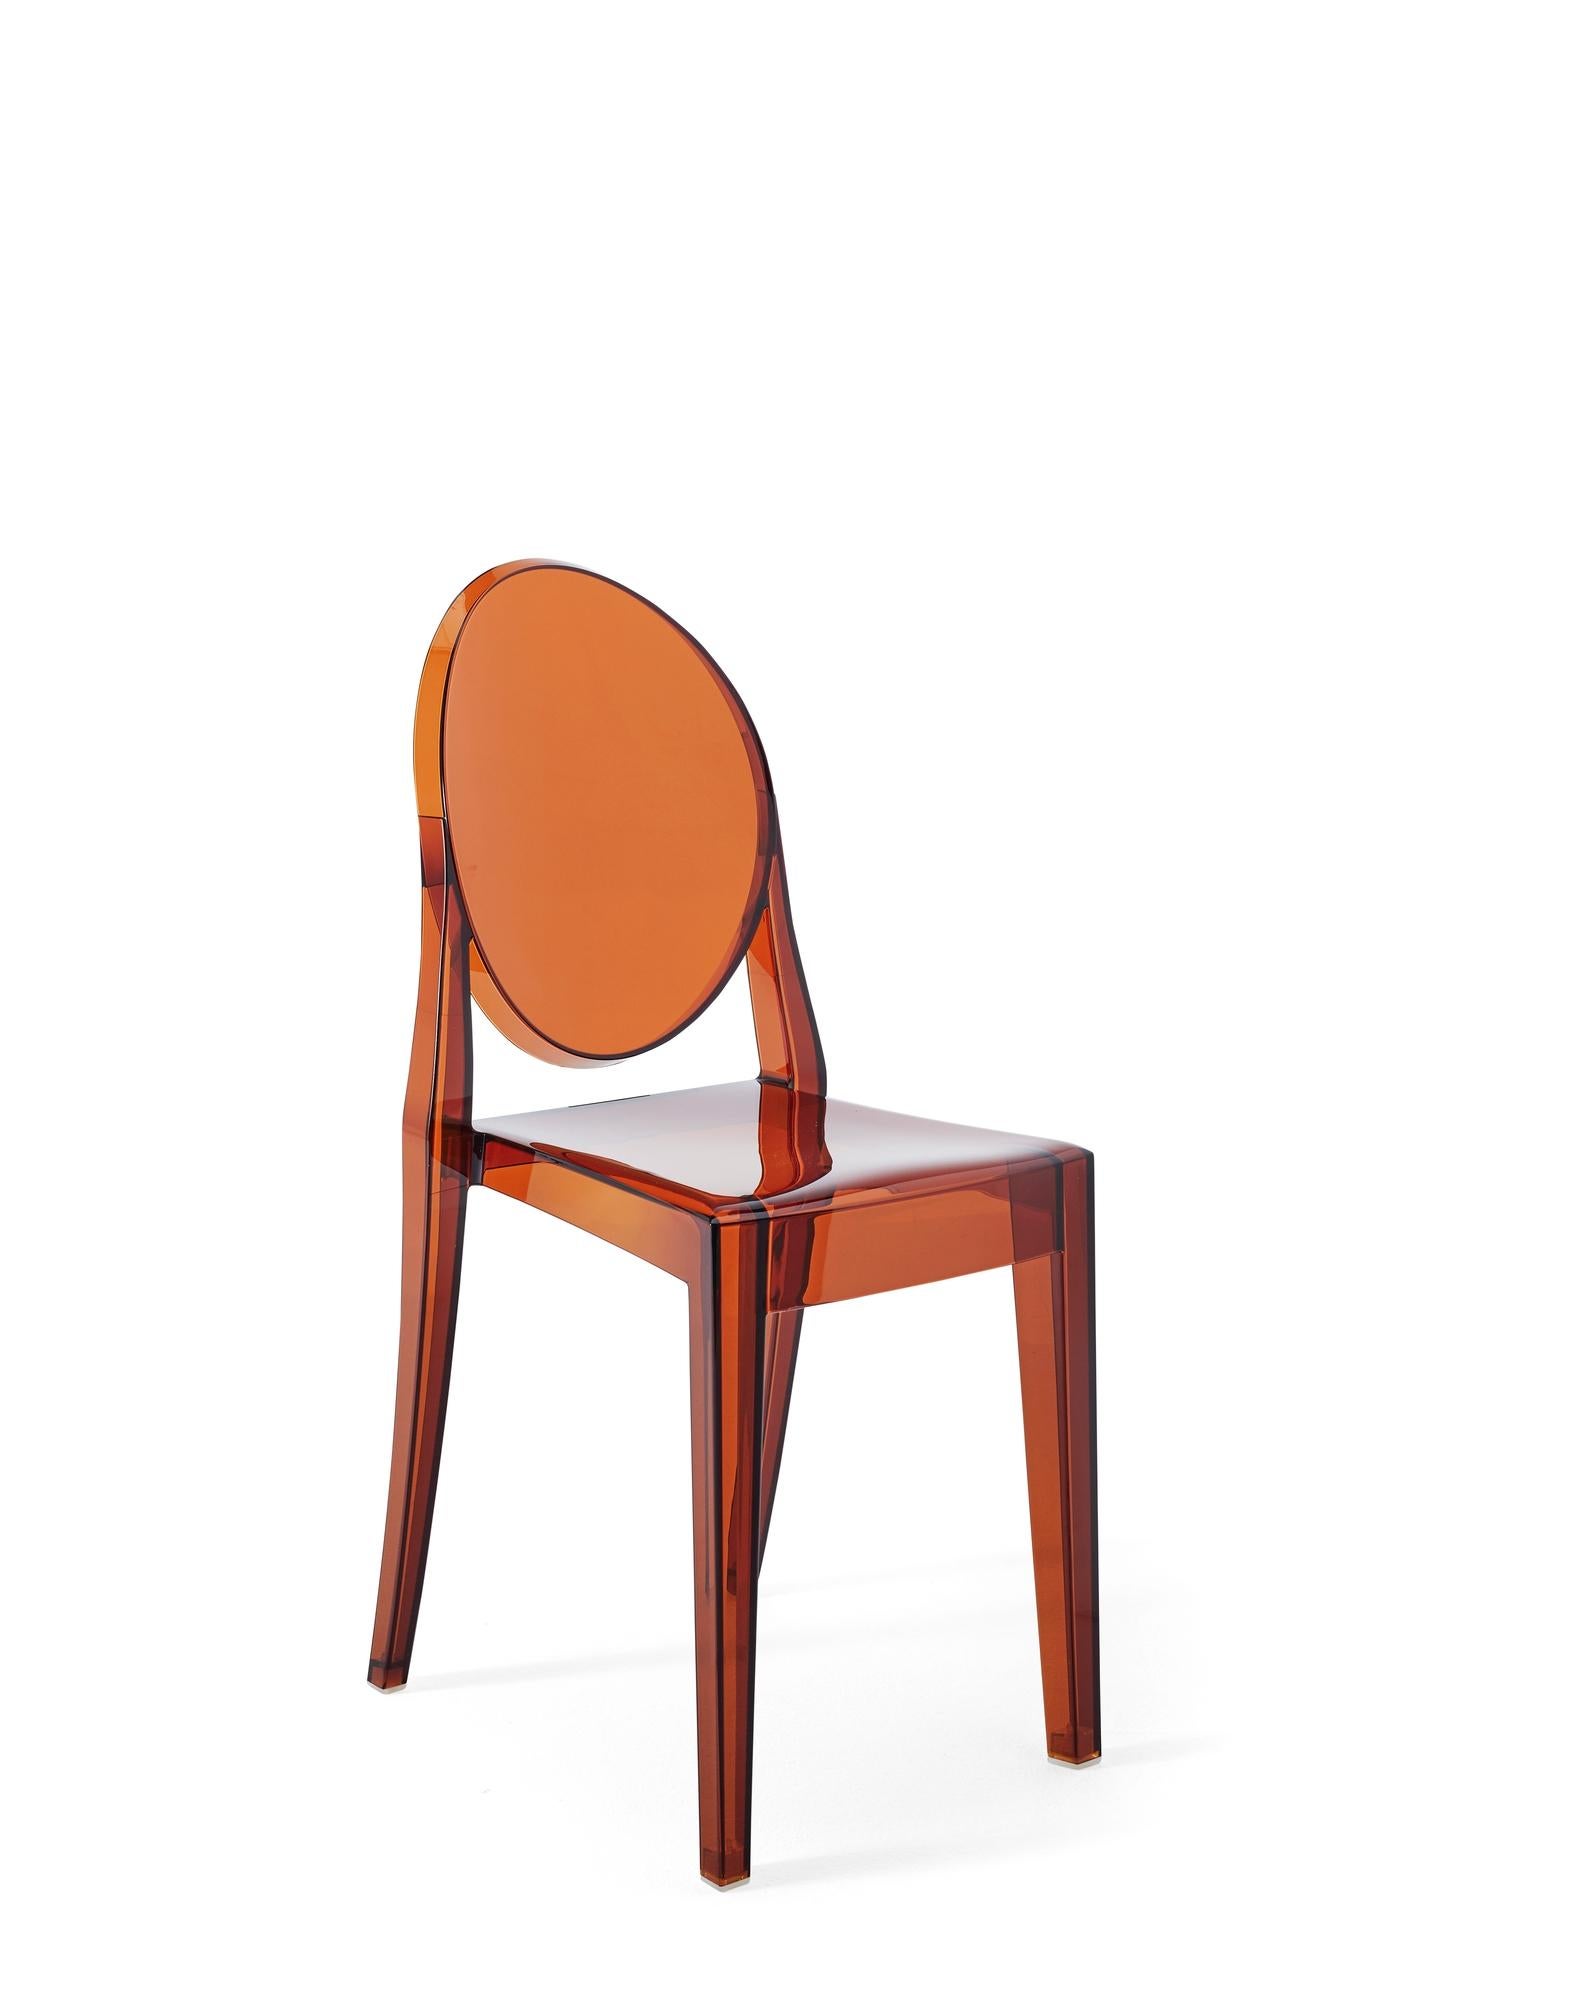 Il s'agit d'une chaise aux lignes classiques, avec un dossier arrondi qui rappelle la forme des médaillons antiques, tandis que l'assise est linéaire et géométrique. Le fantôme Victoria est fabriqué en polycarbonate transparent et coloré et formé